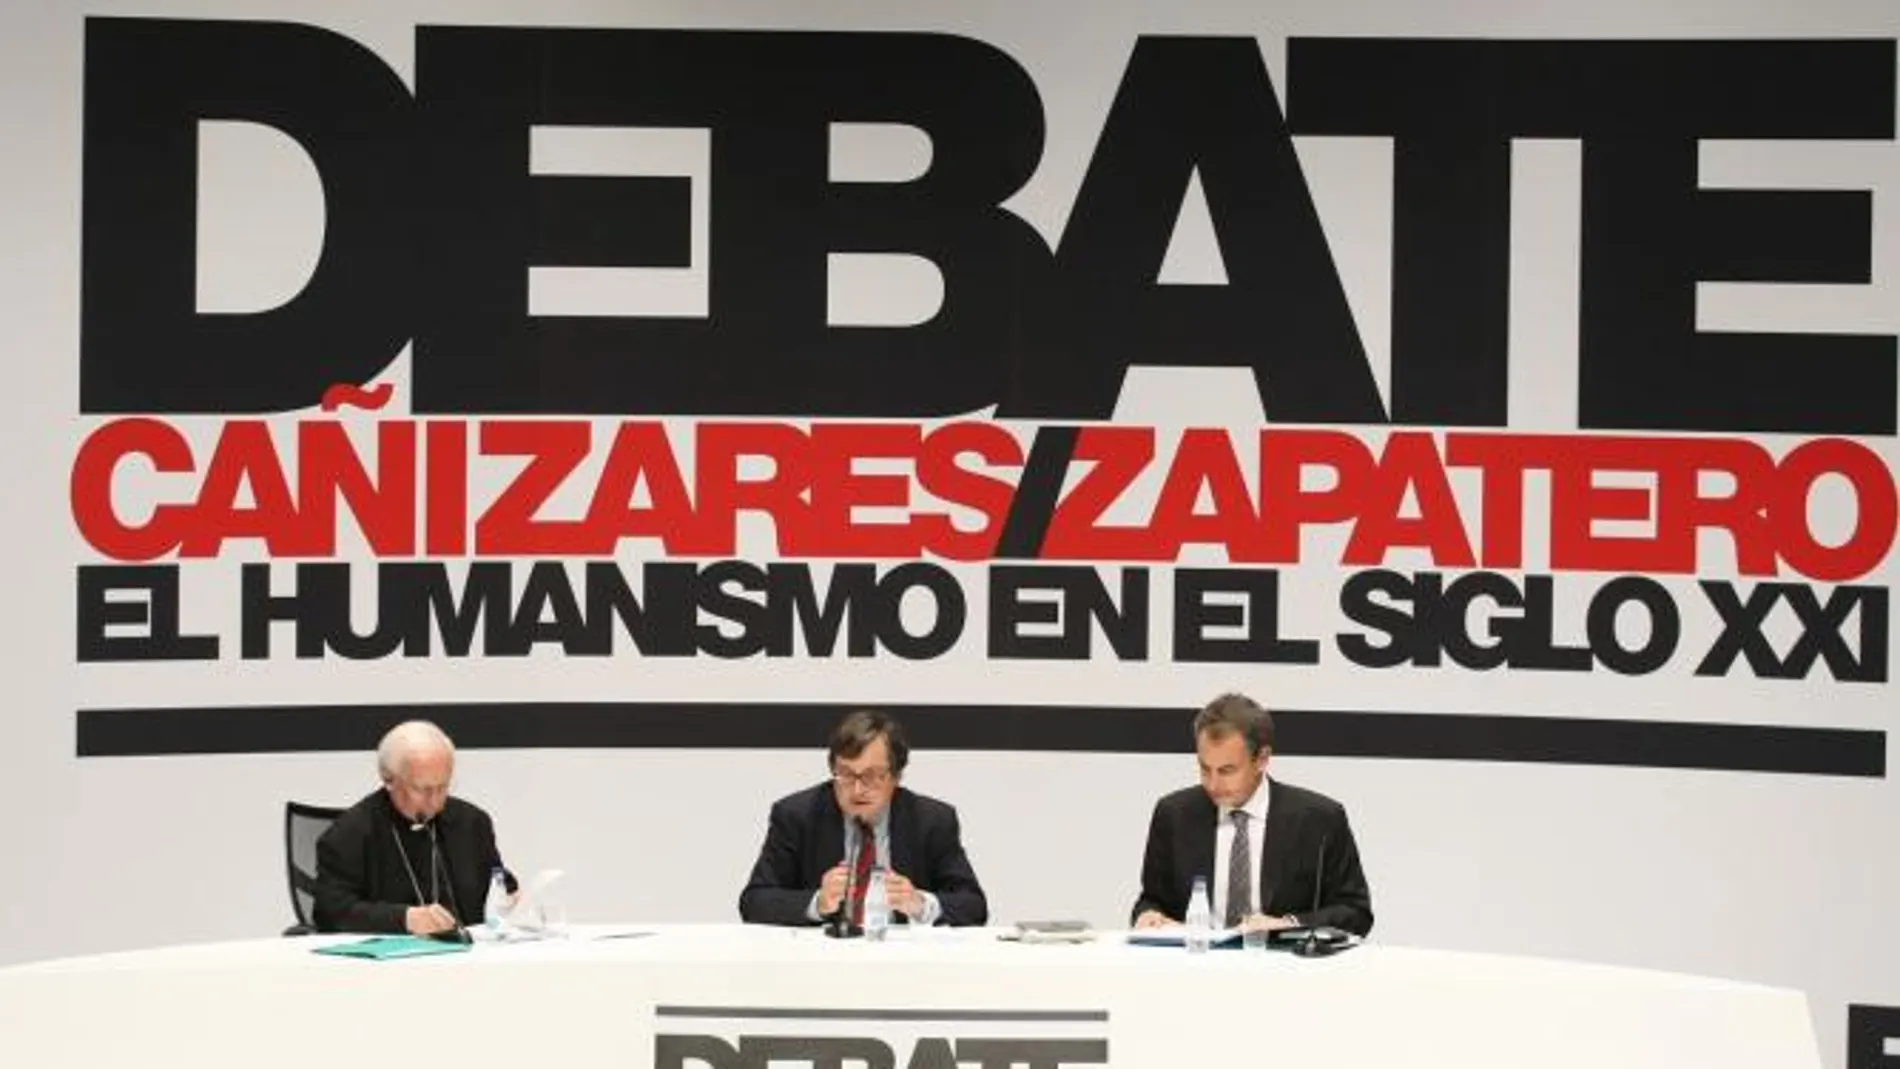 Diálogo y crisis de valores centran el debate entre Cañizares y Zapatero